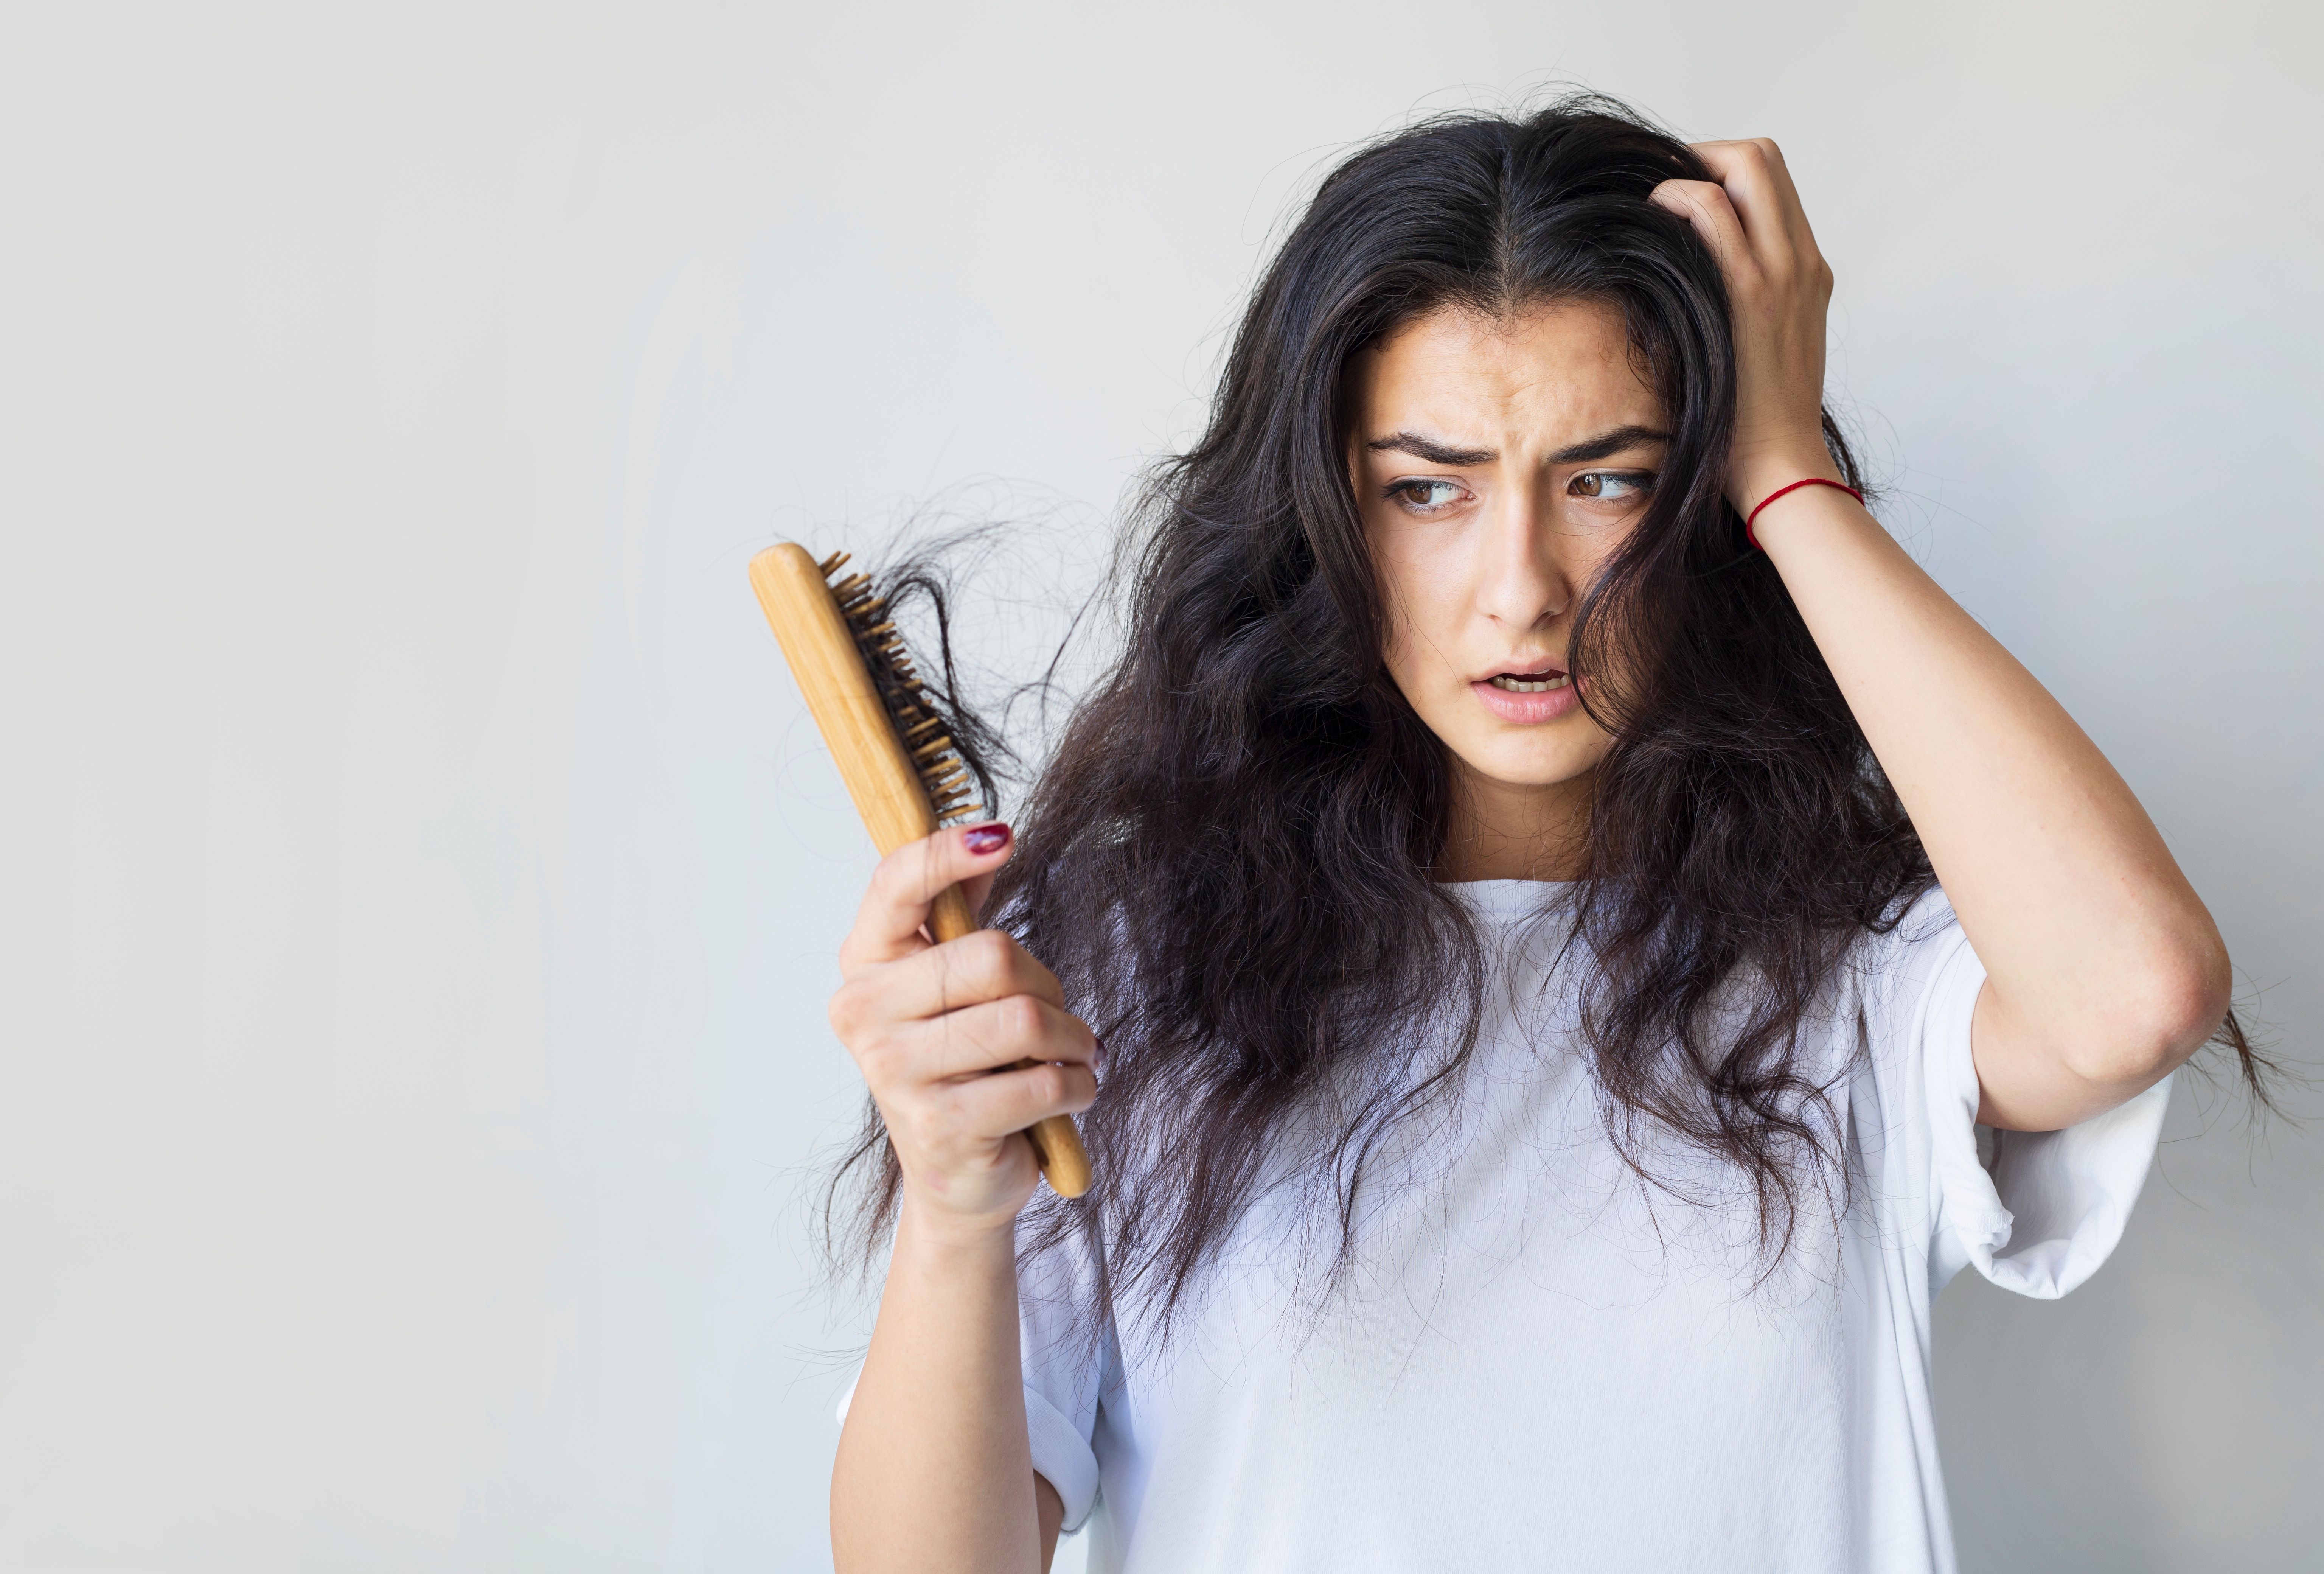 Čini li vam se ponekad da vas "boli" kosa? Evo u čemu je stvar i kako riješiti problem